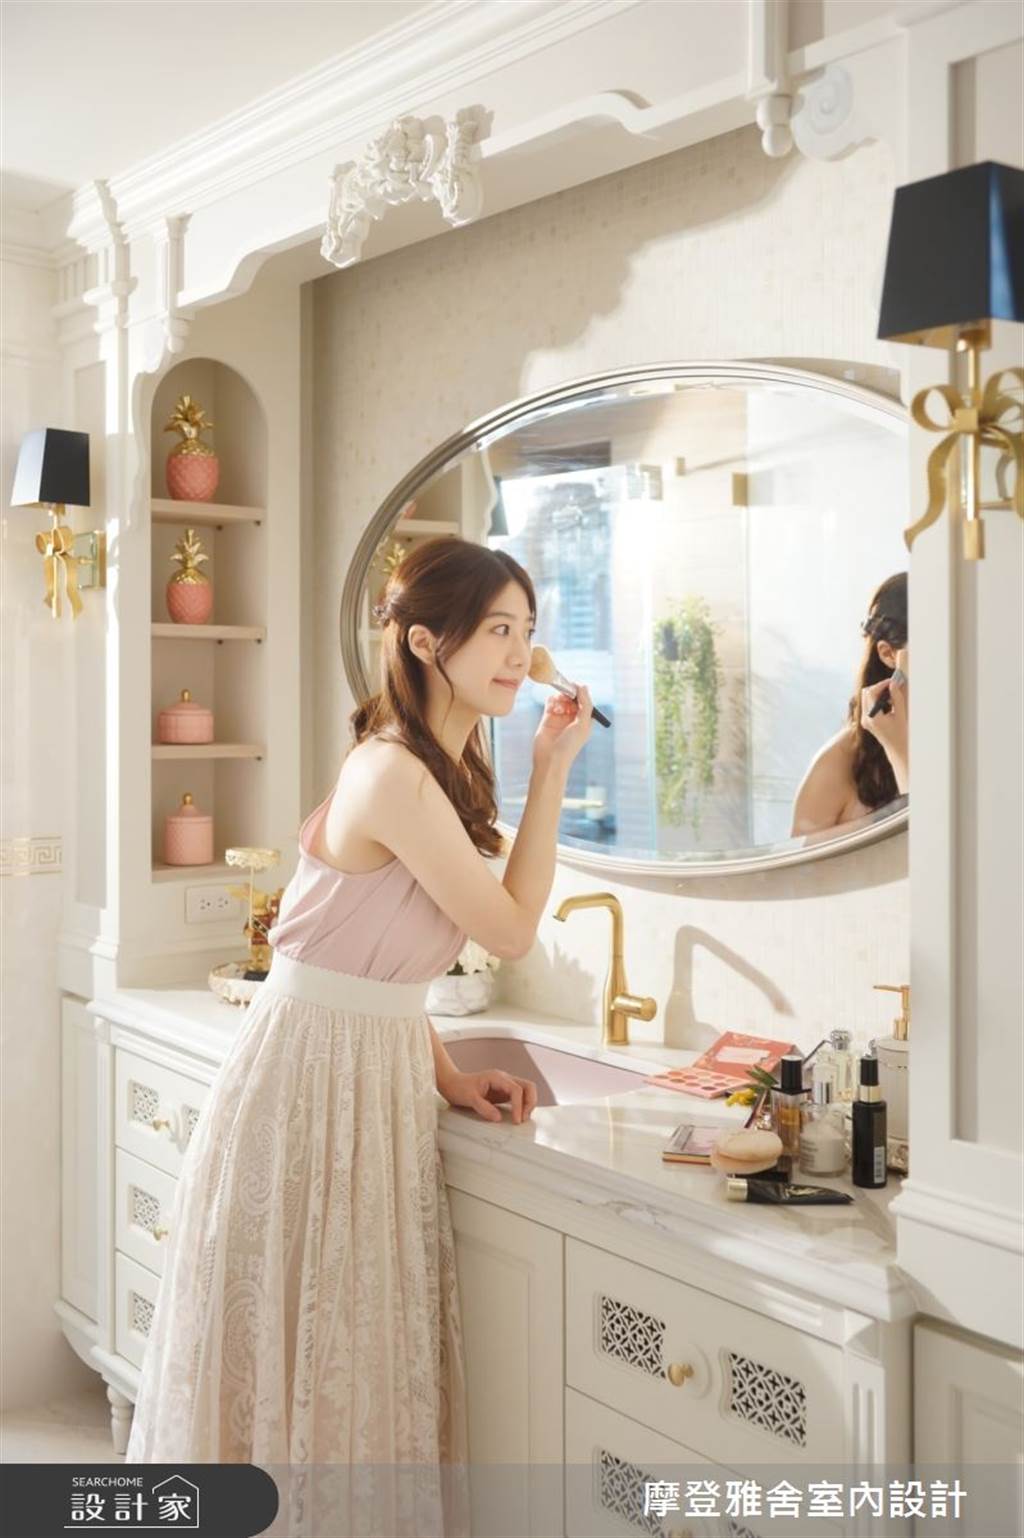 有鑑於近年喜好站立化妝的女性屋主益發增加，設計師結合洗手台功能並提升檯面高度，讓梳理自我的時刻可以更富效率。(圖/設計家)